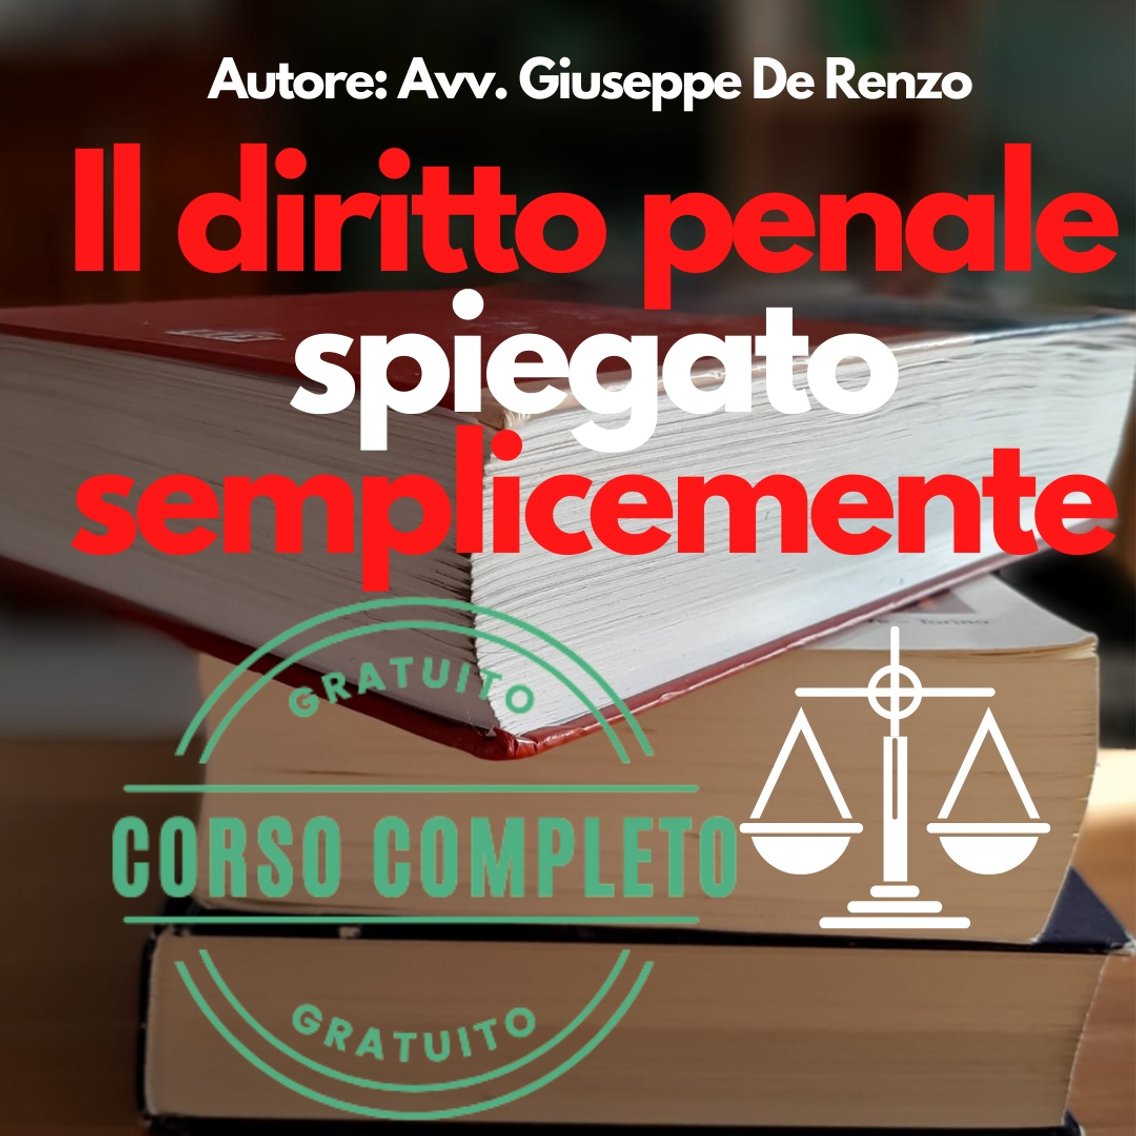 Listen to Il diritto penale spiegato semplicemente podcast